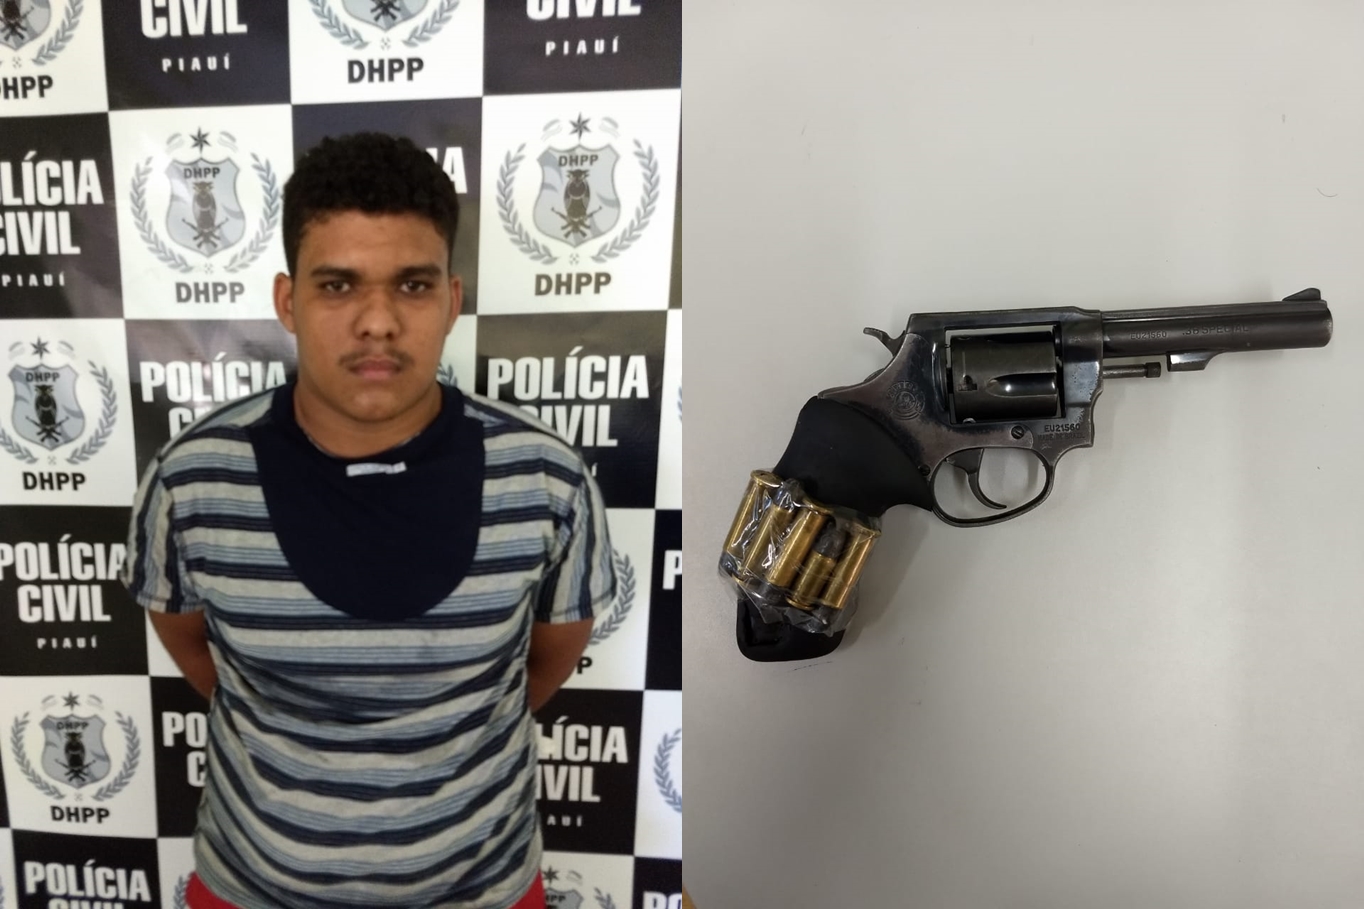 Acusado foi preso em sua residência no bairro Água Mineral, onde foi encontrada arma de fogo roubada.